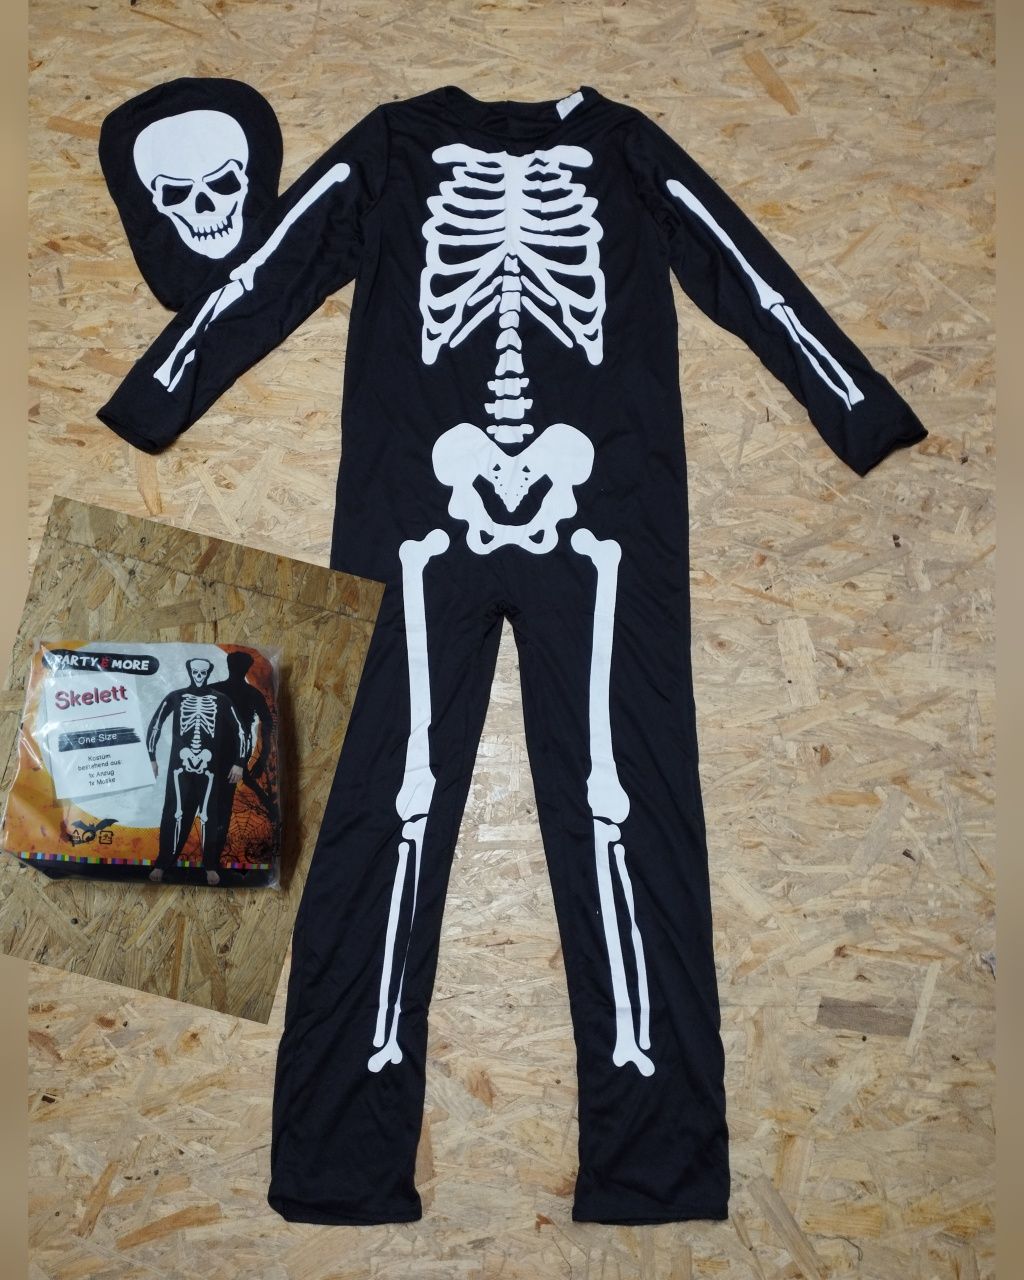 Мужской Карнавальный костюм на Хэллоуин для взрослых скелет Кощей
One